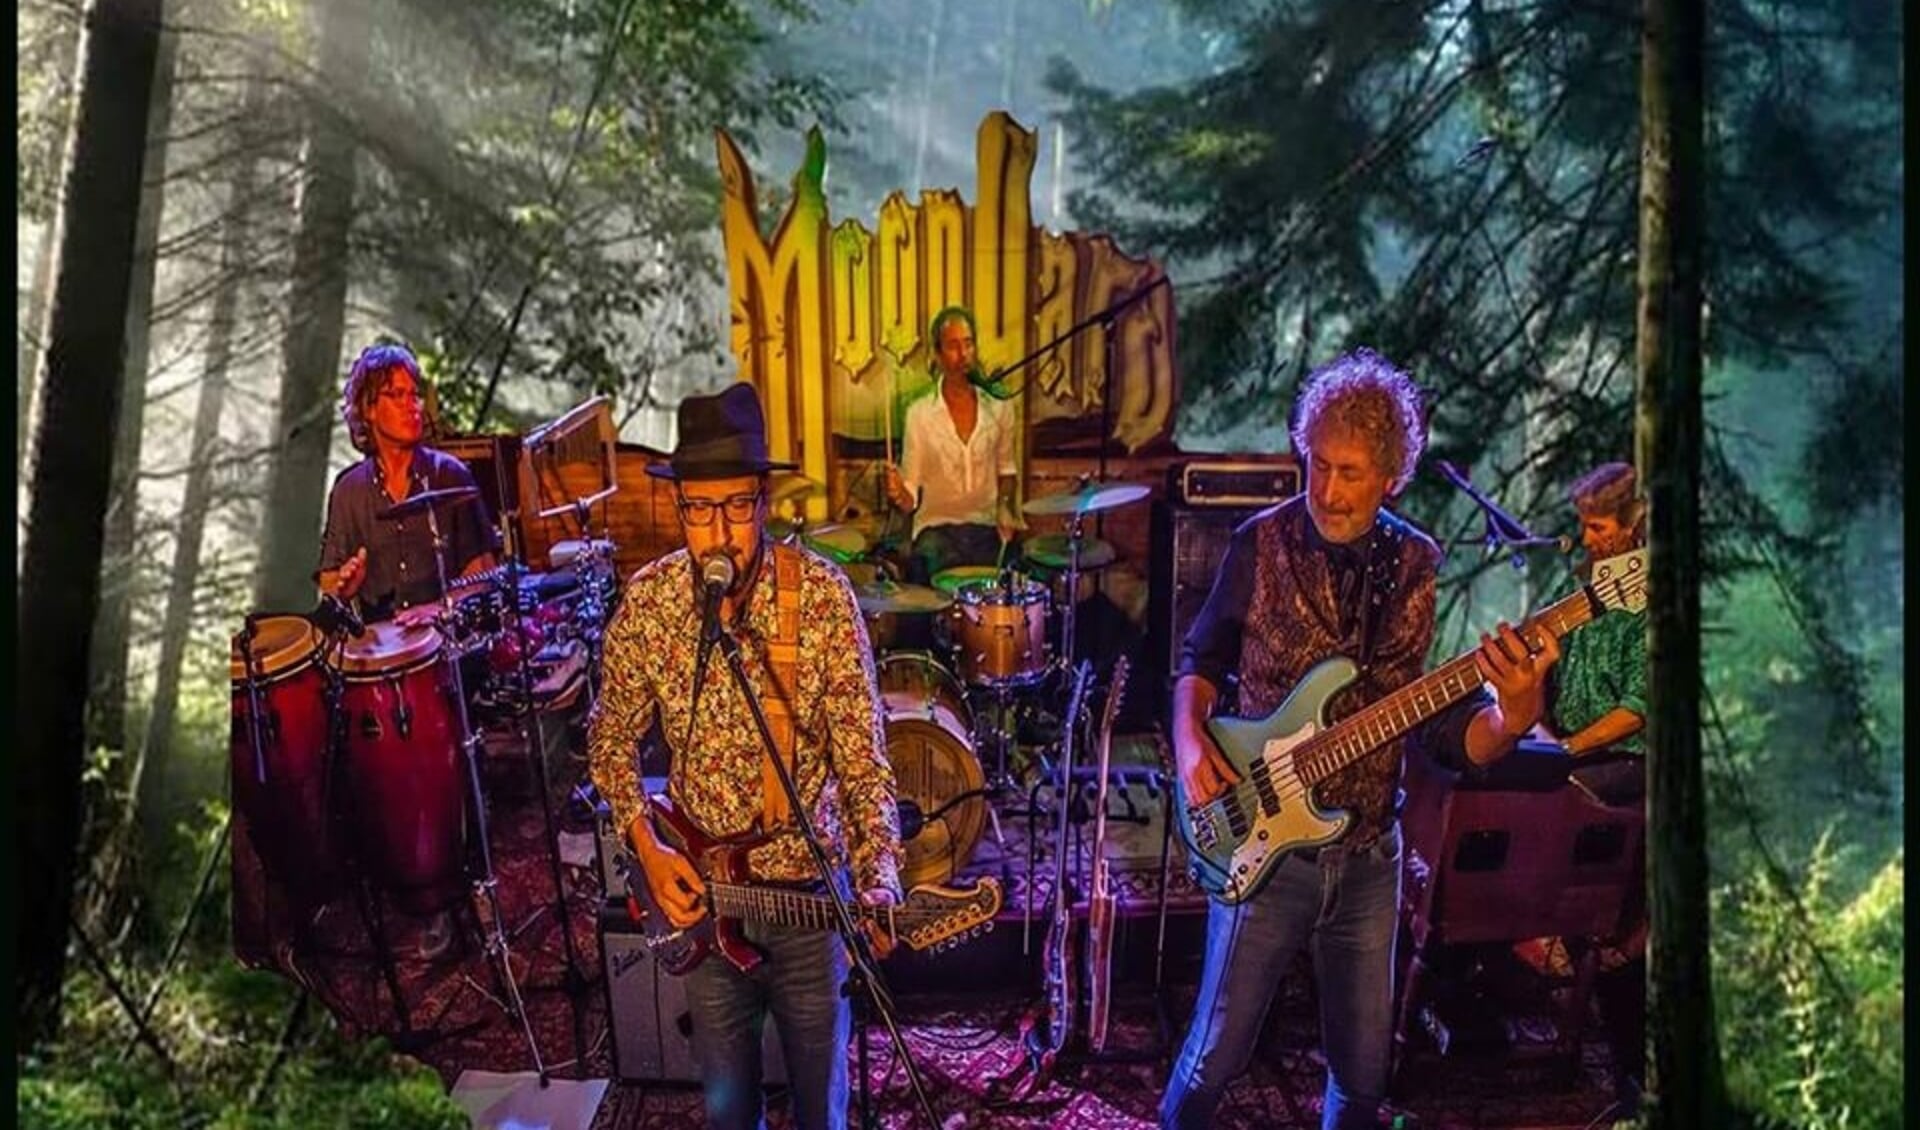 De band MoonYard treedt morgen op in The Shack.